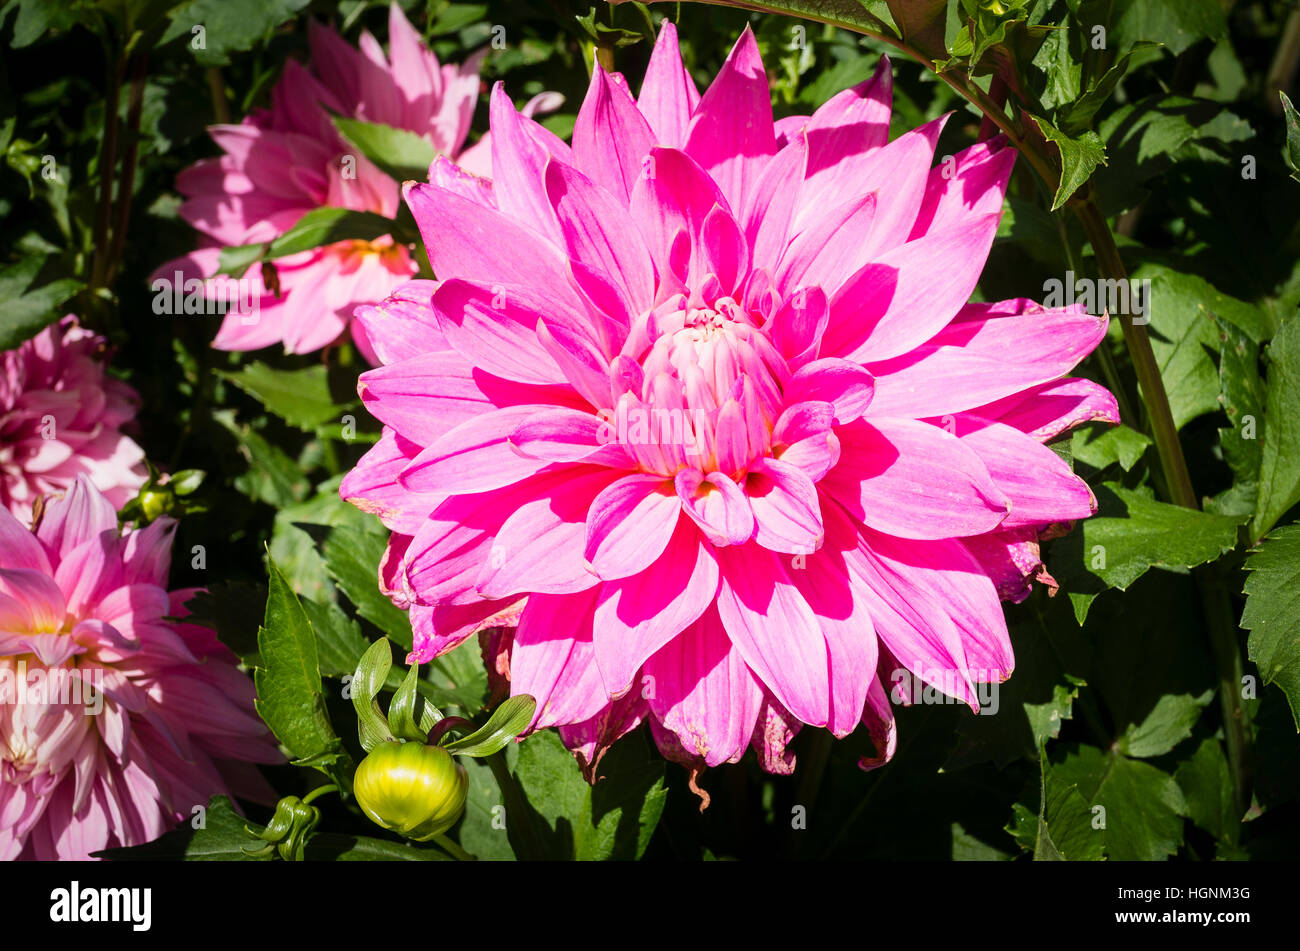 Dahlia Garden Wonder flowering in September in the UK Stock Photo